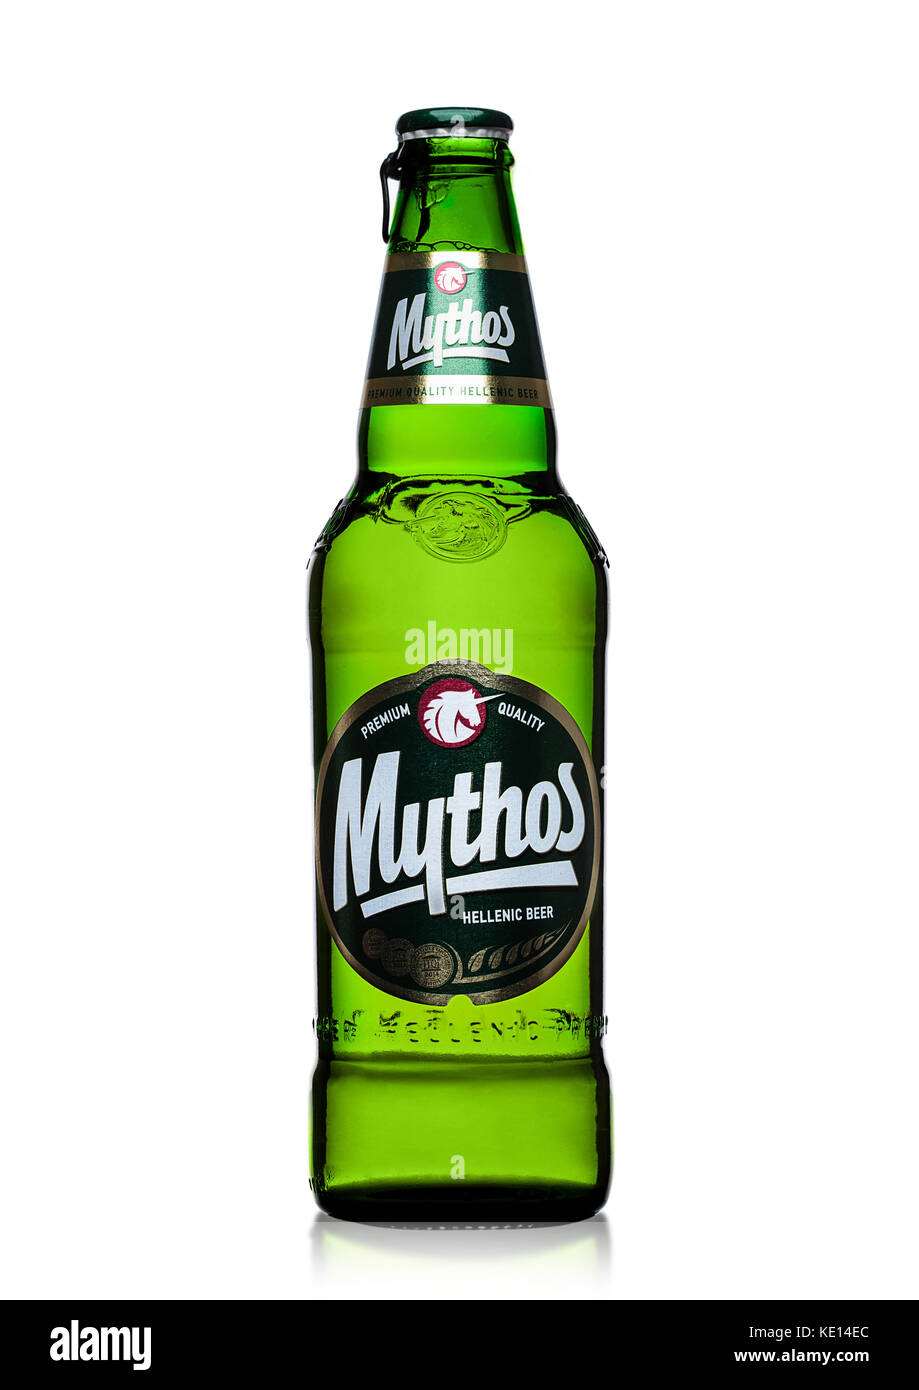 London, UK, 15. März 2017: Flasche mythos Bier auf weißem Hintergrund. Durch den Mythos Brewery Company, die beliebte Marke wurde 1997 ins Leben gerufen. Stockfoto